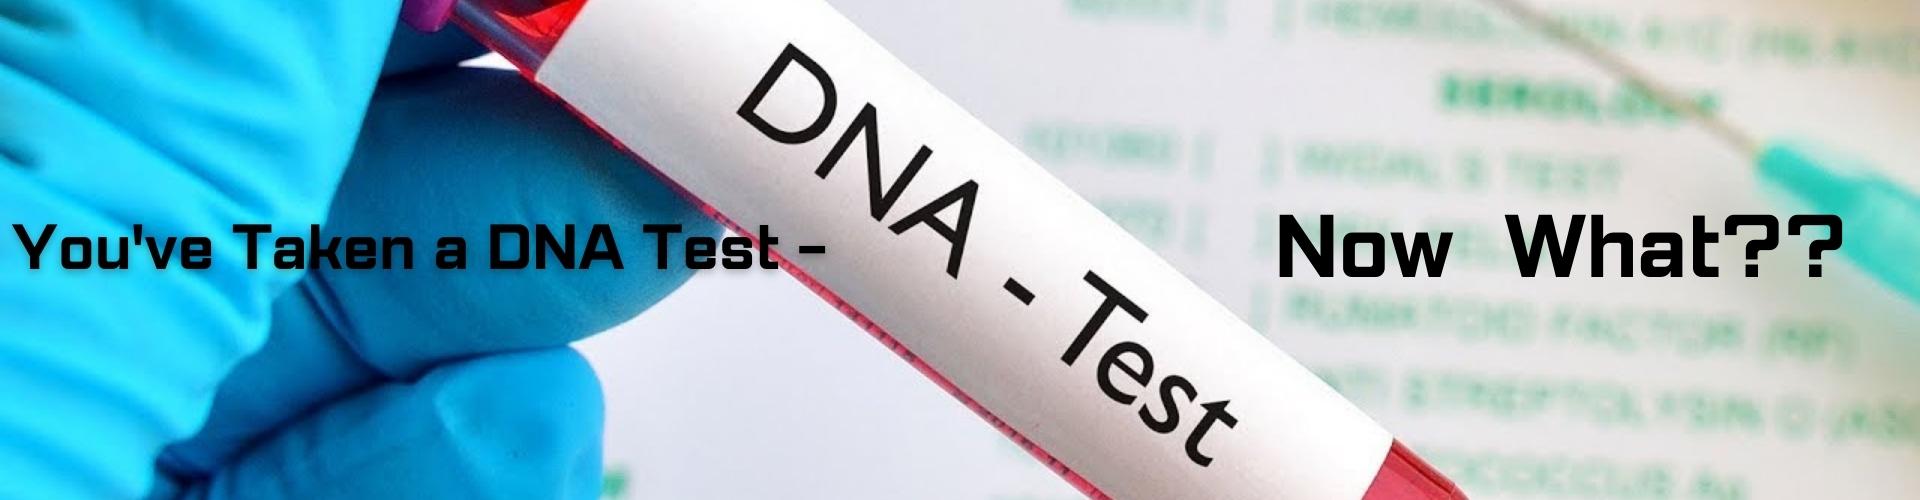 Taken a DNA Test